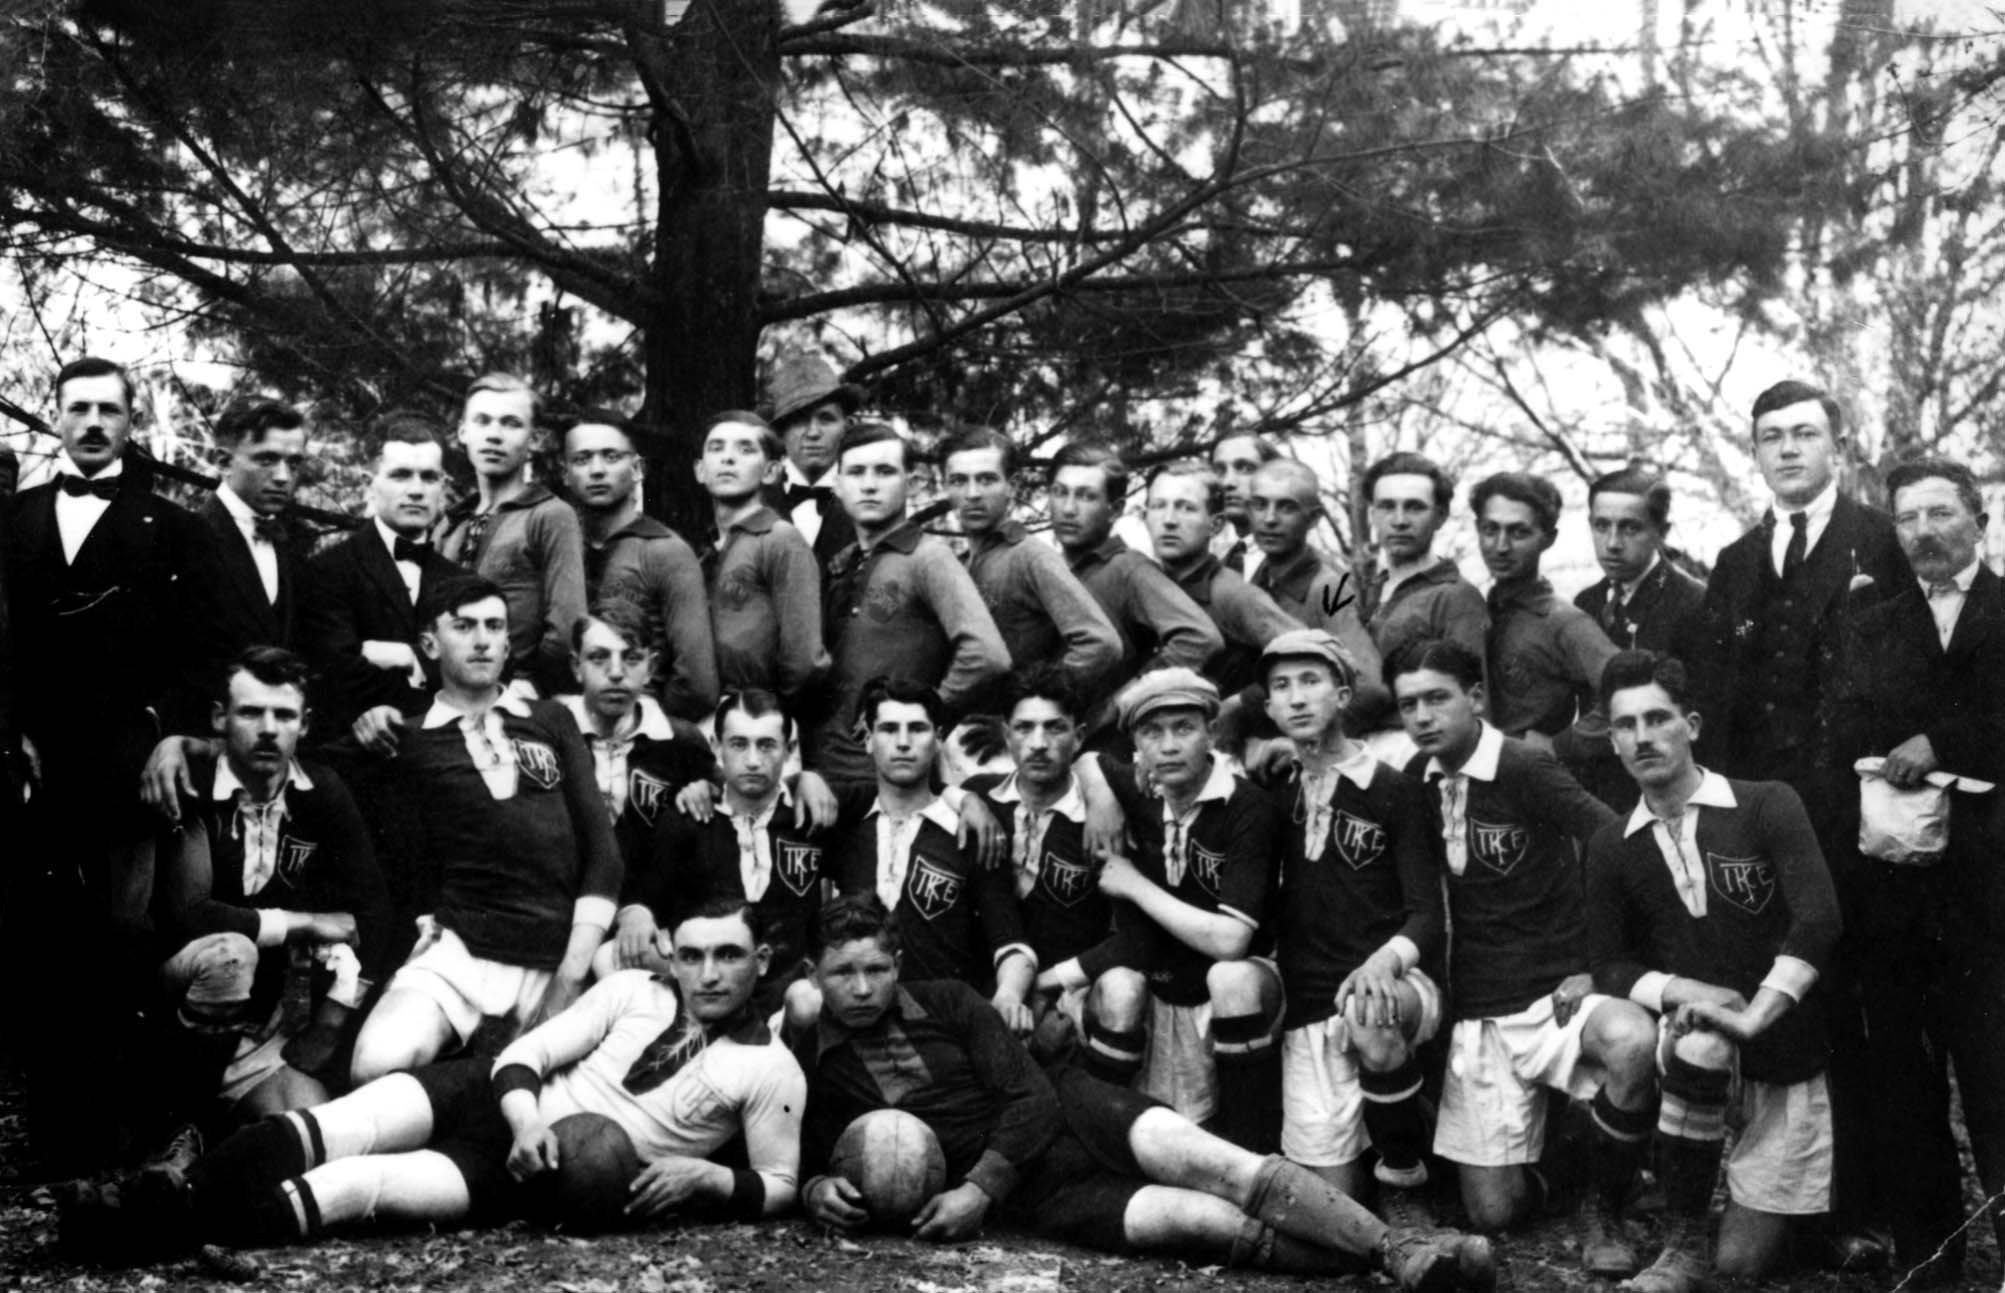 Ungarn in der Vorkriegszeit, eine Fußballmannschaft, die gerade ein Turnier gewonnen hat